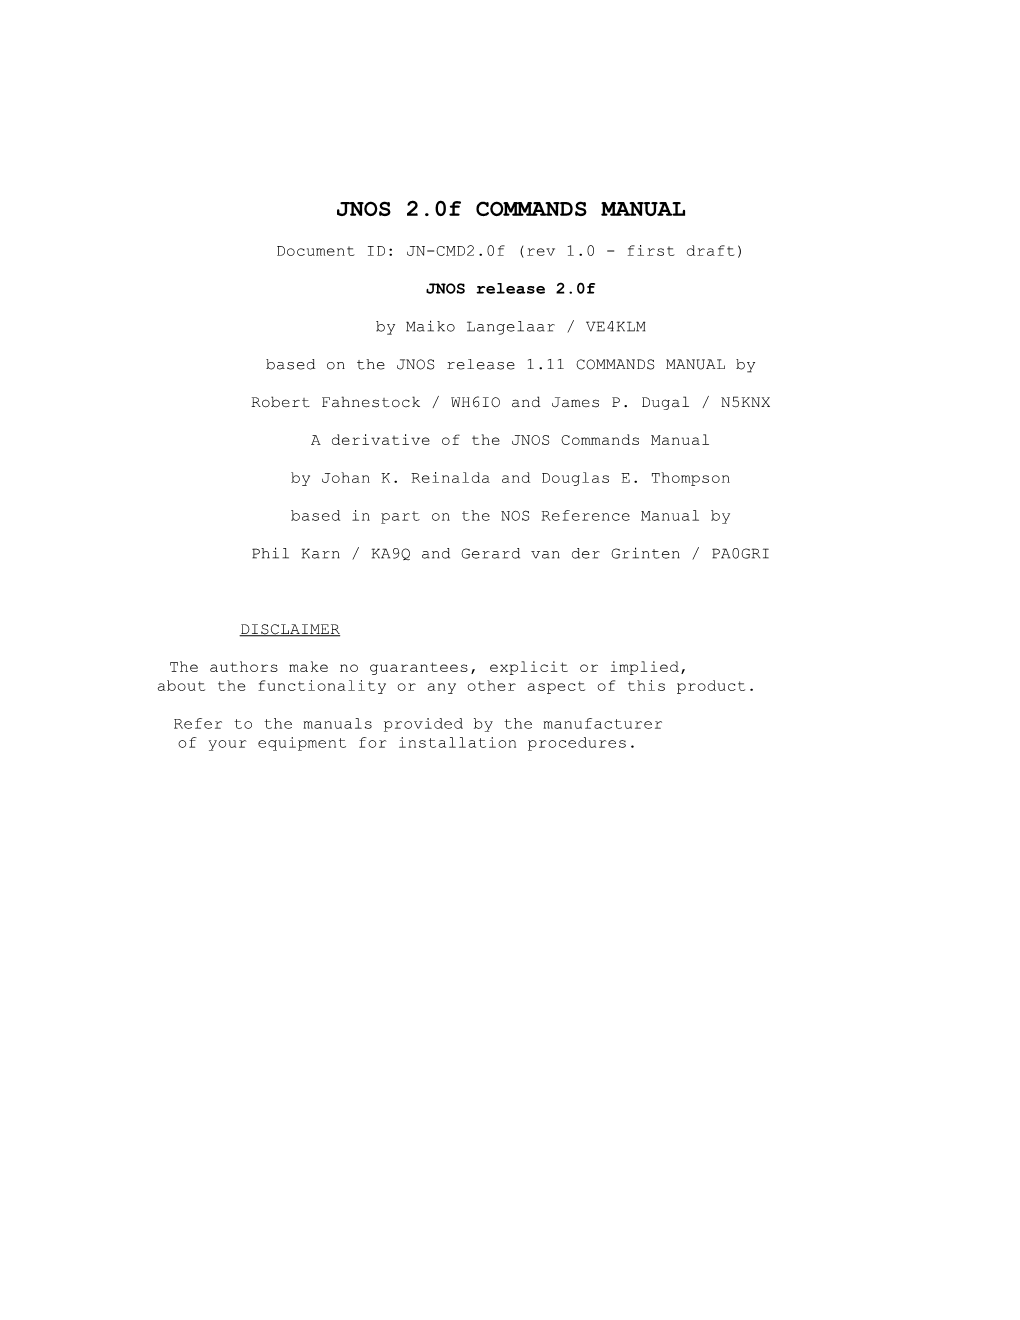 JNOS 2.0F COMMANDS MANUAL